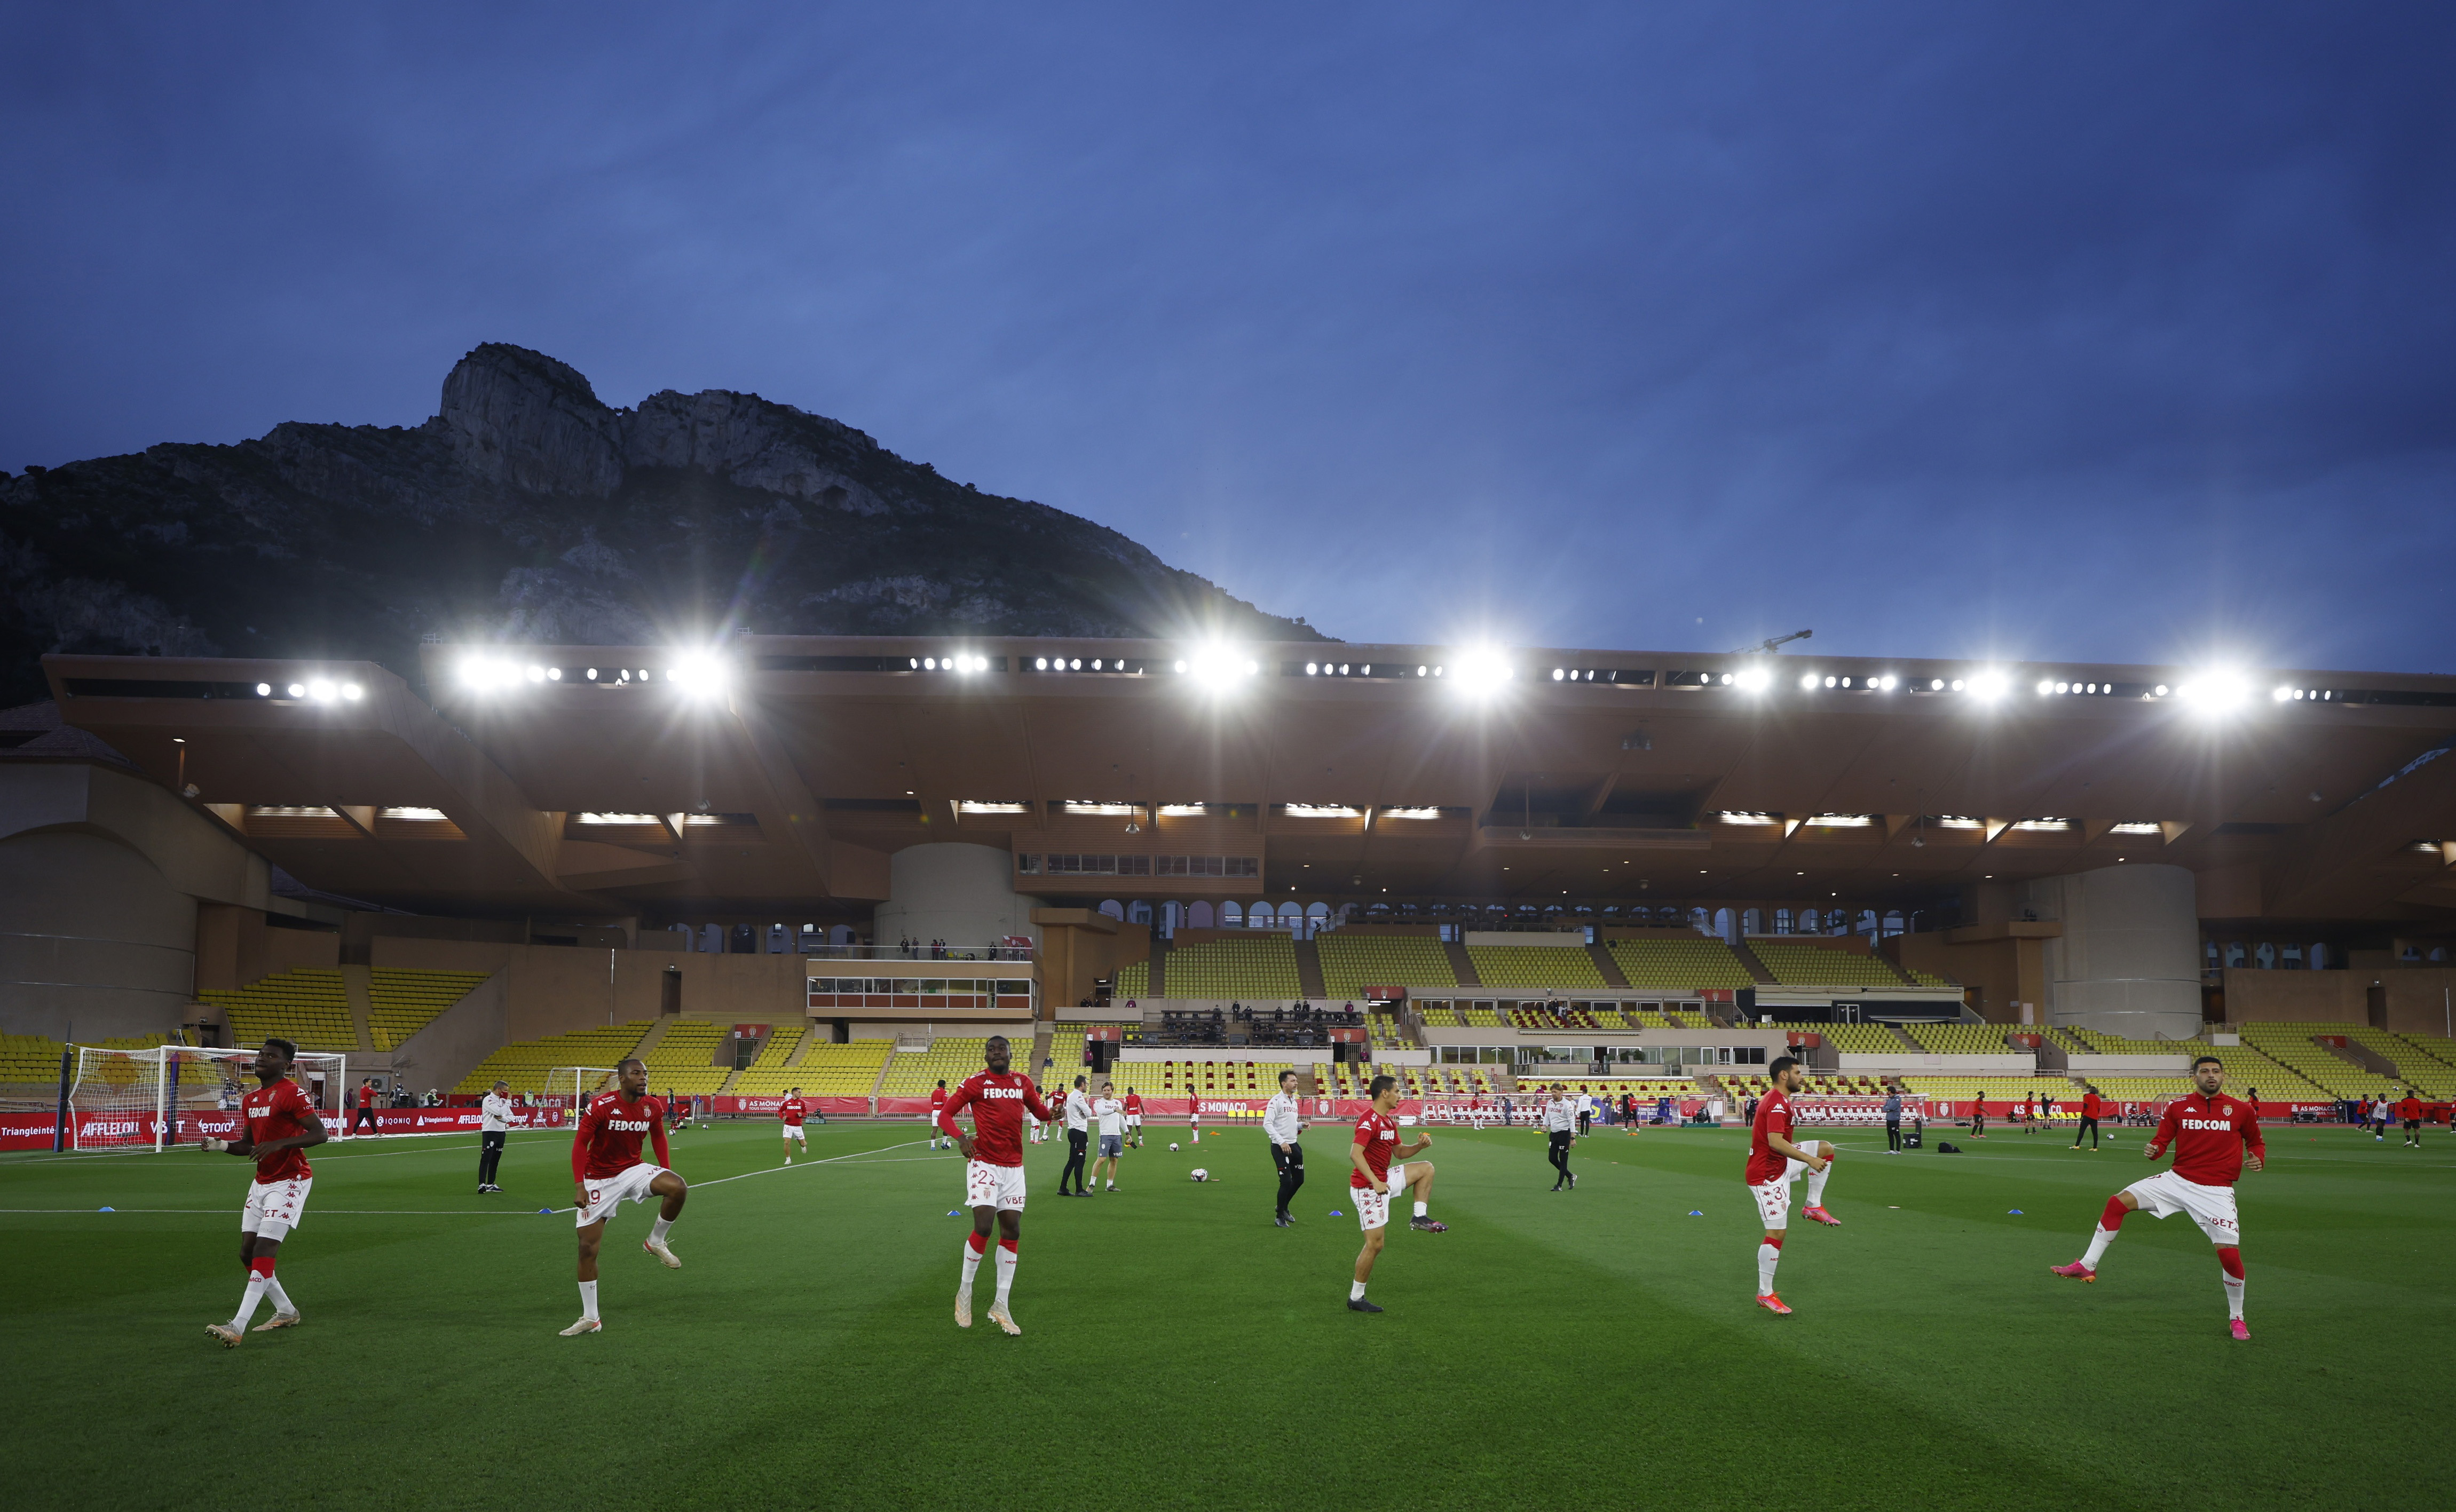 Ligue 1 - AS Monaco v Stade Rennes